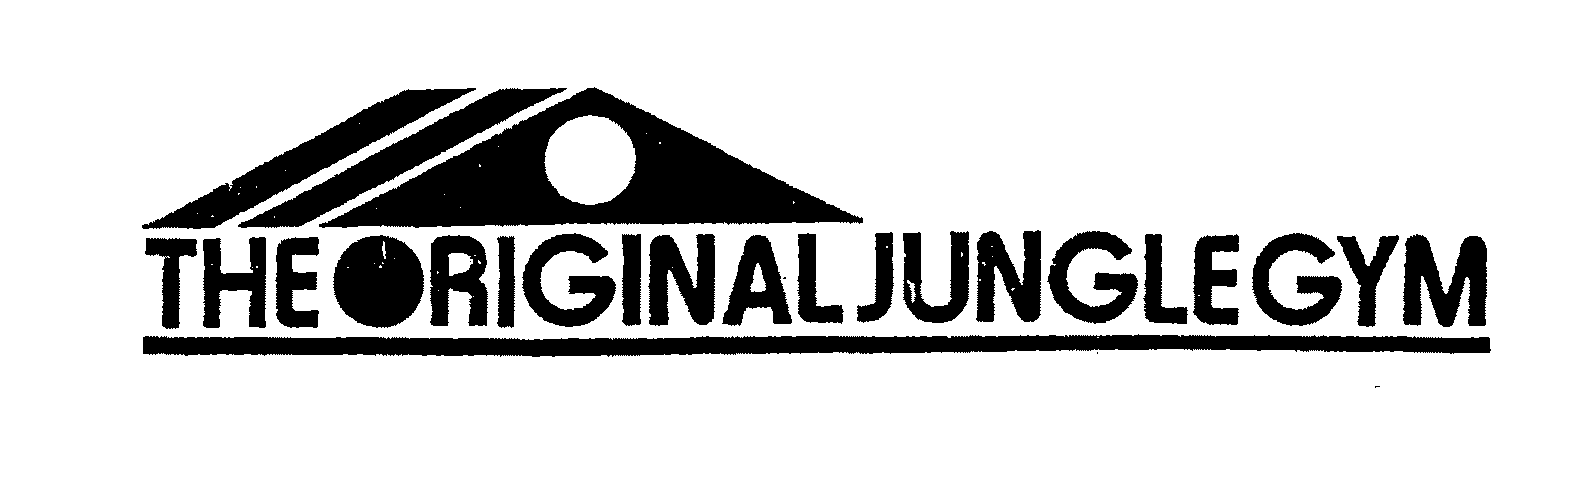  THE ORIGINAL JUNGLE GYM